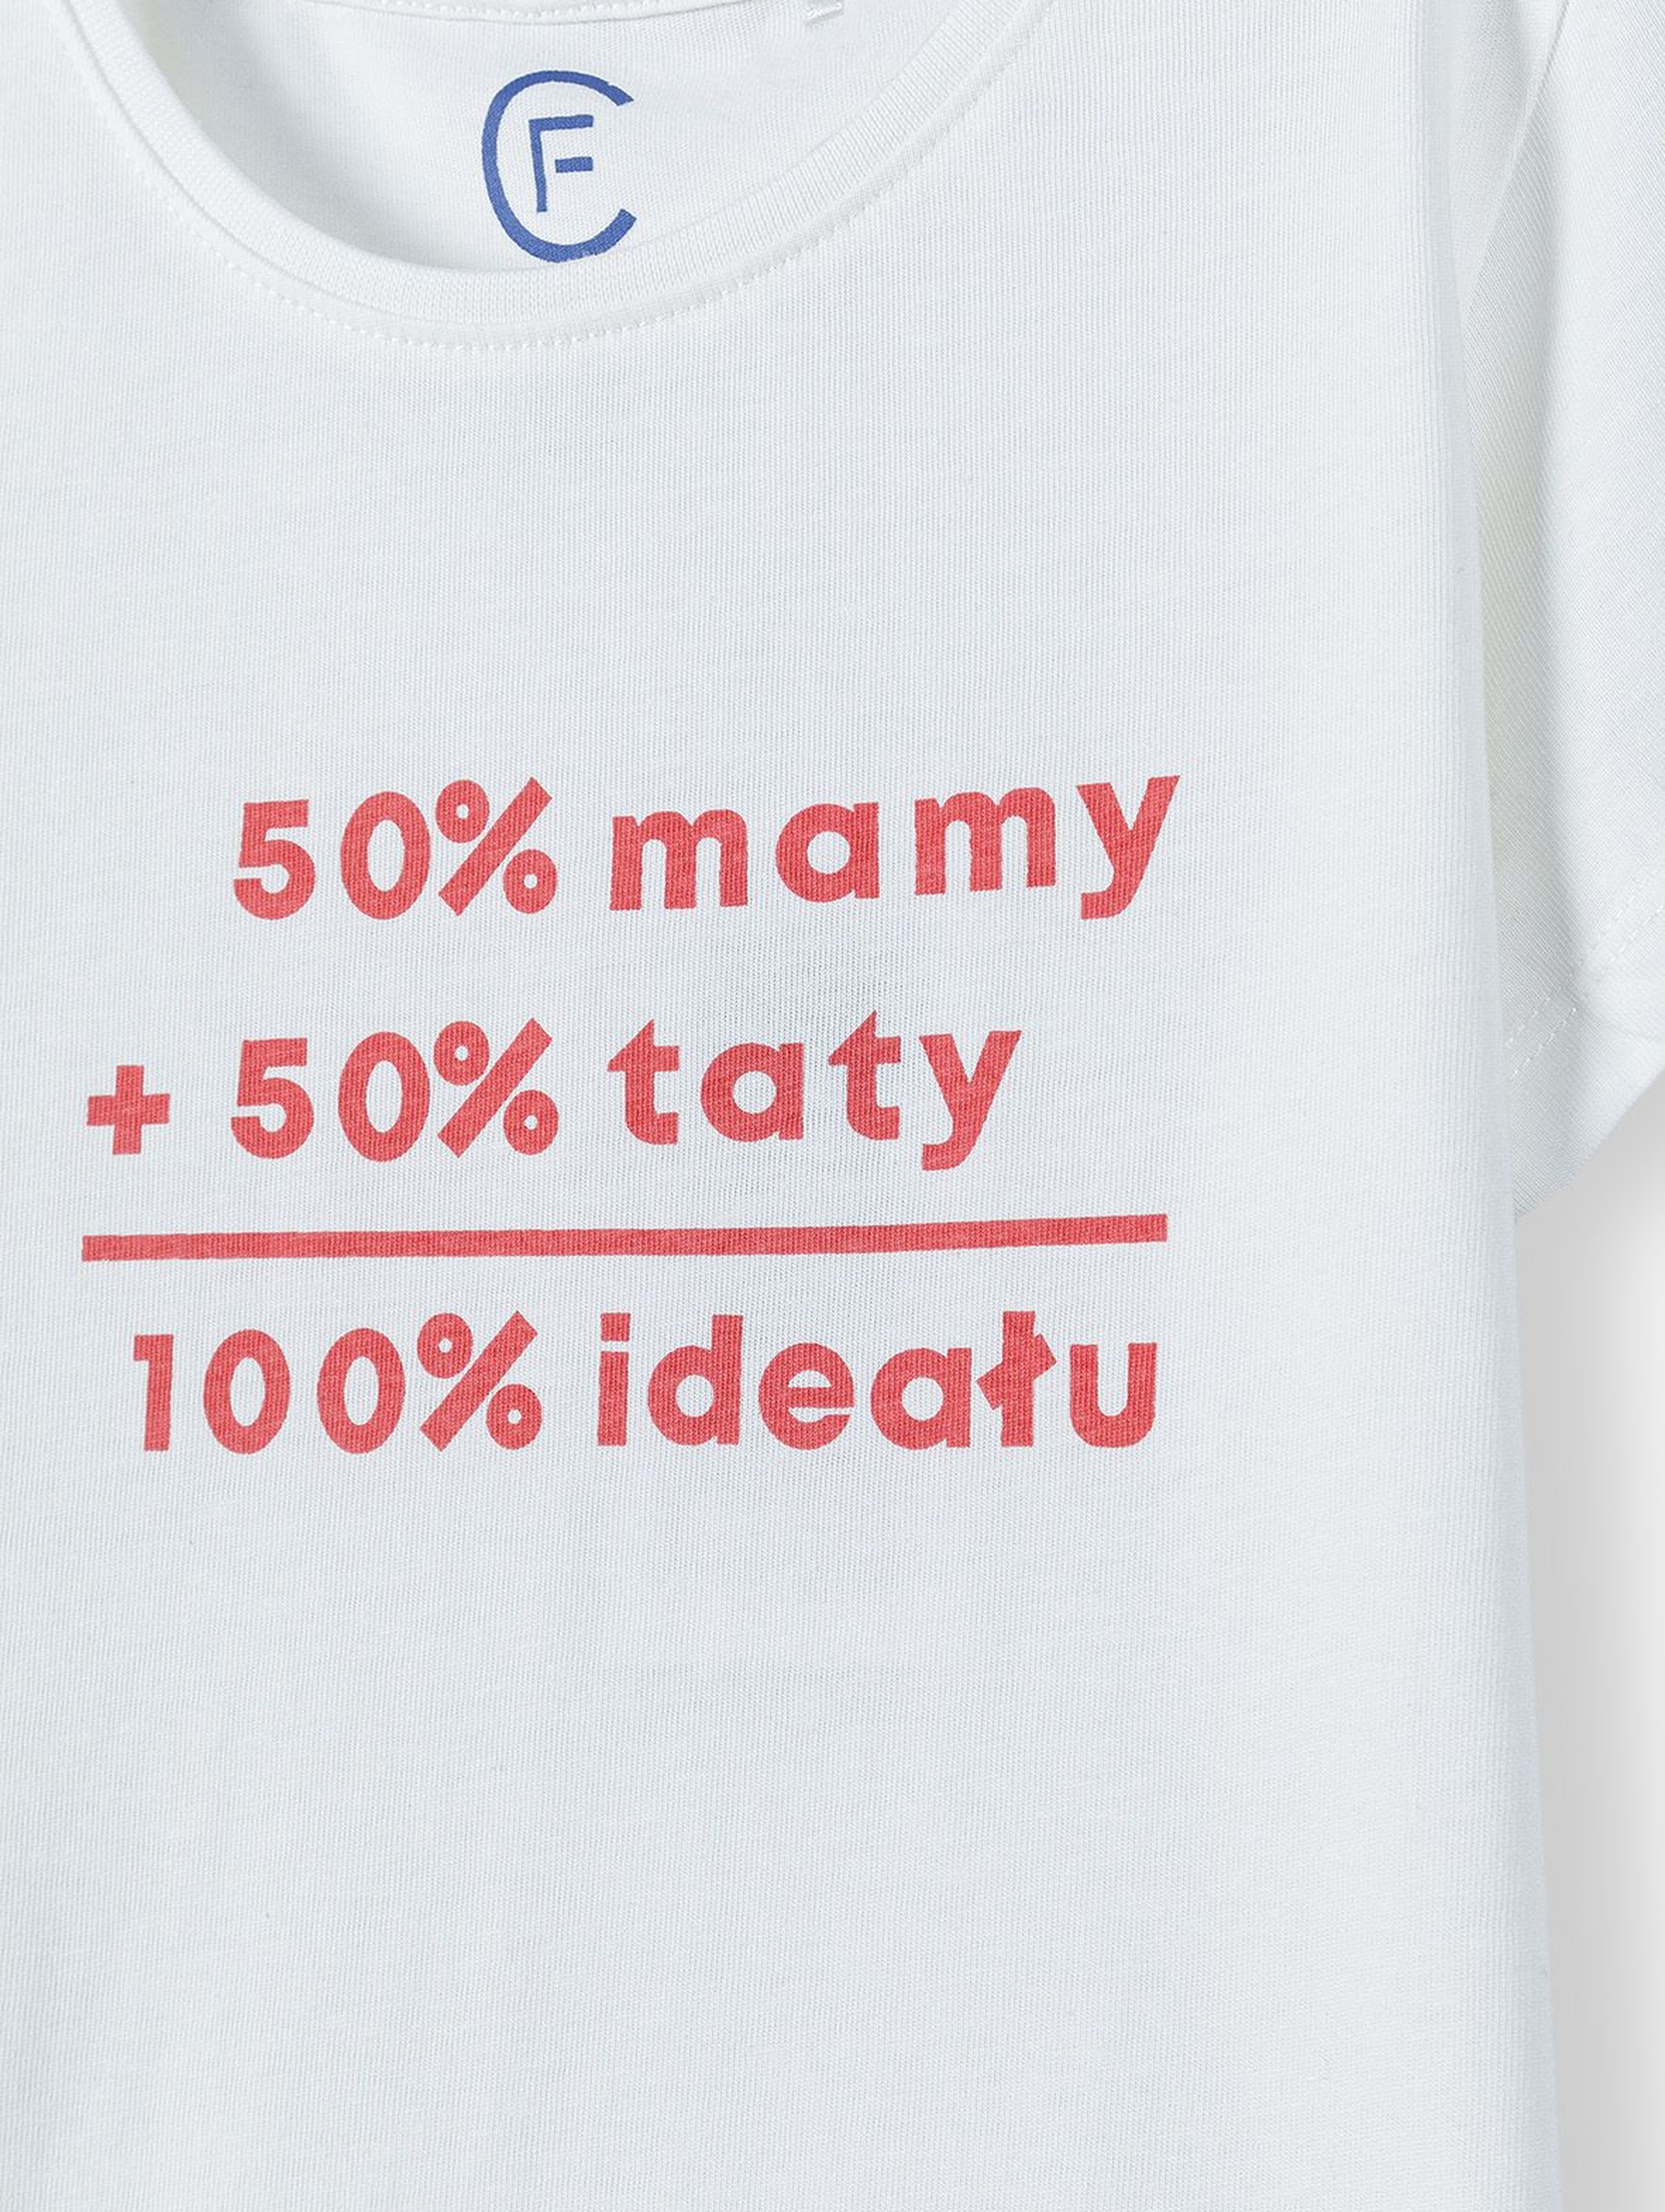 Bawełniany t-shirt dziewczęcy z miekkim nadrukiem - 50% mamy 50% taty 100% ideału